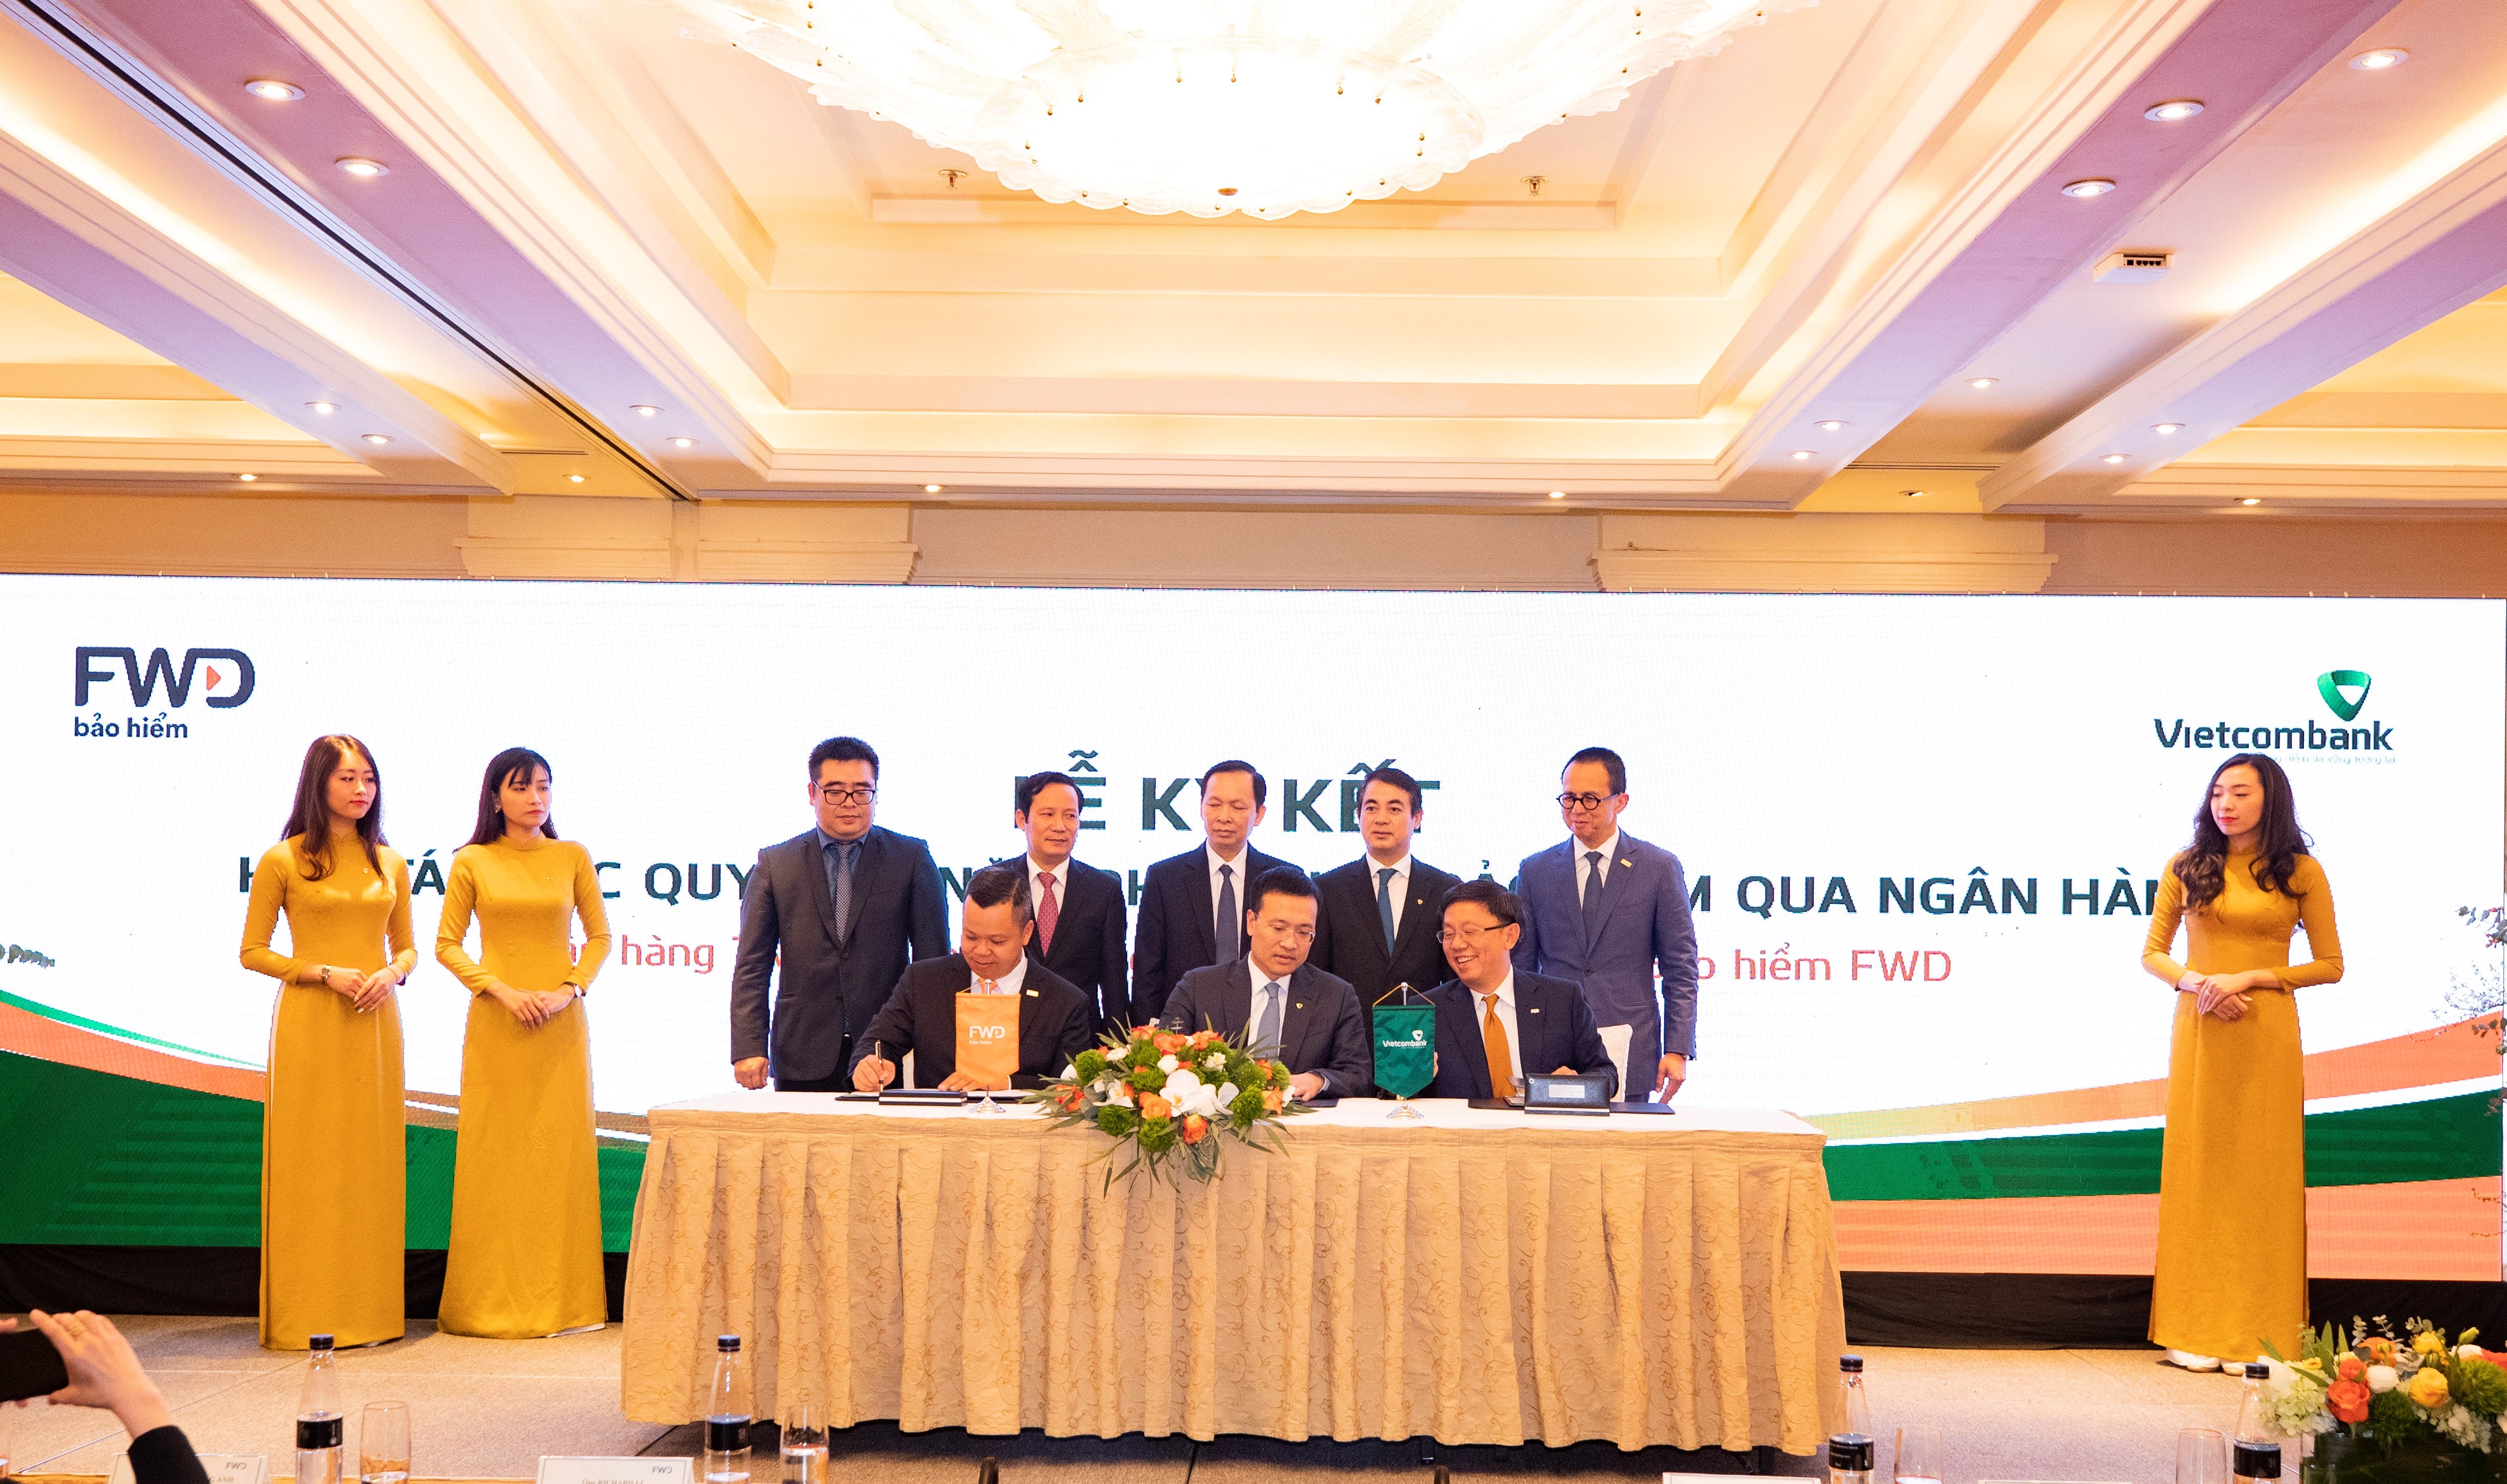 Vietcombank và FWD ký kết hợp tác độc quyền 15 năm phân phối bảo hiểm qua ngân hàng tại Việt Nam